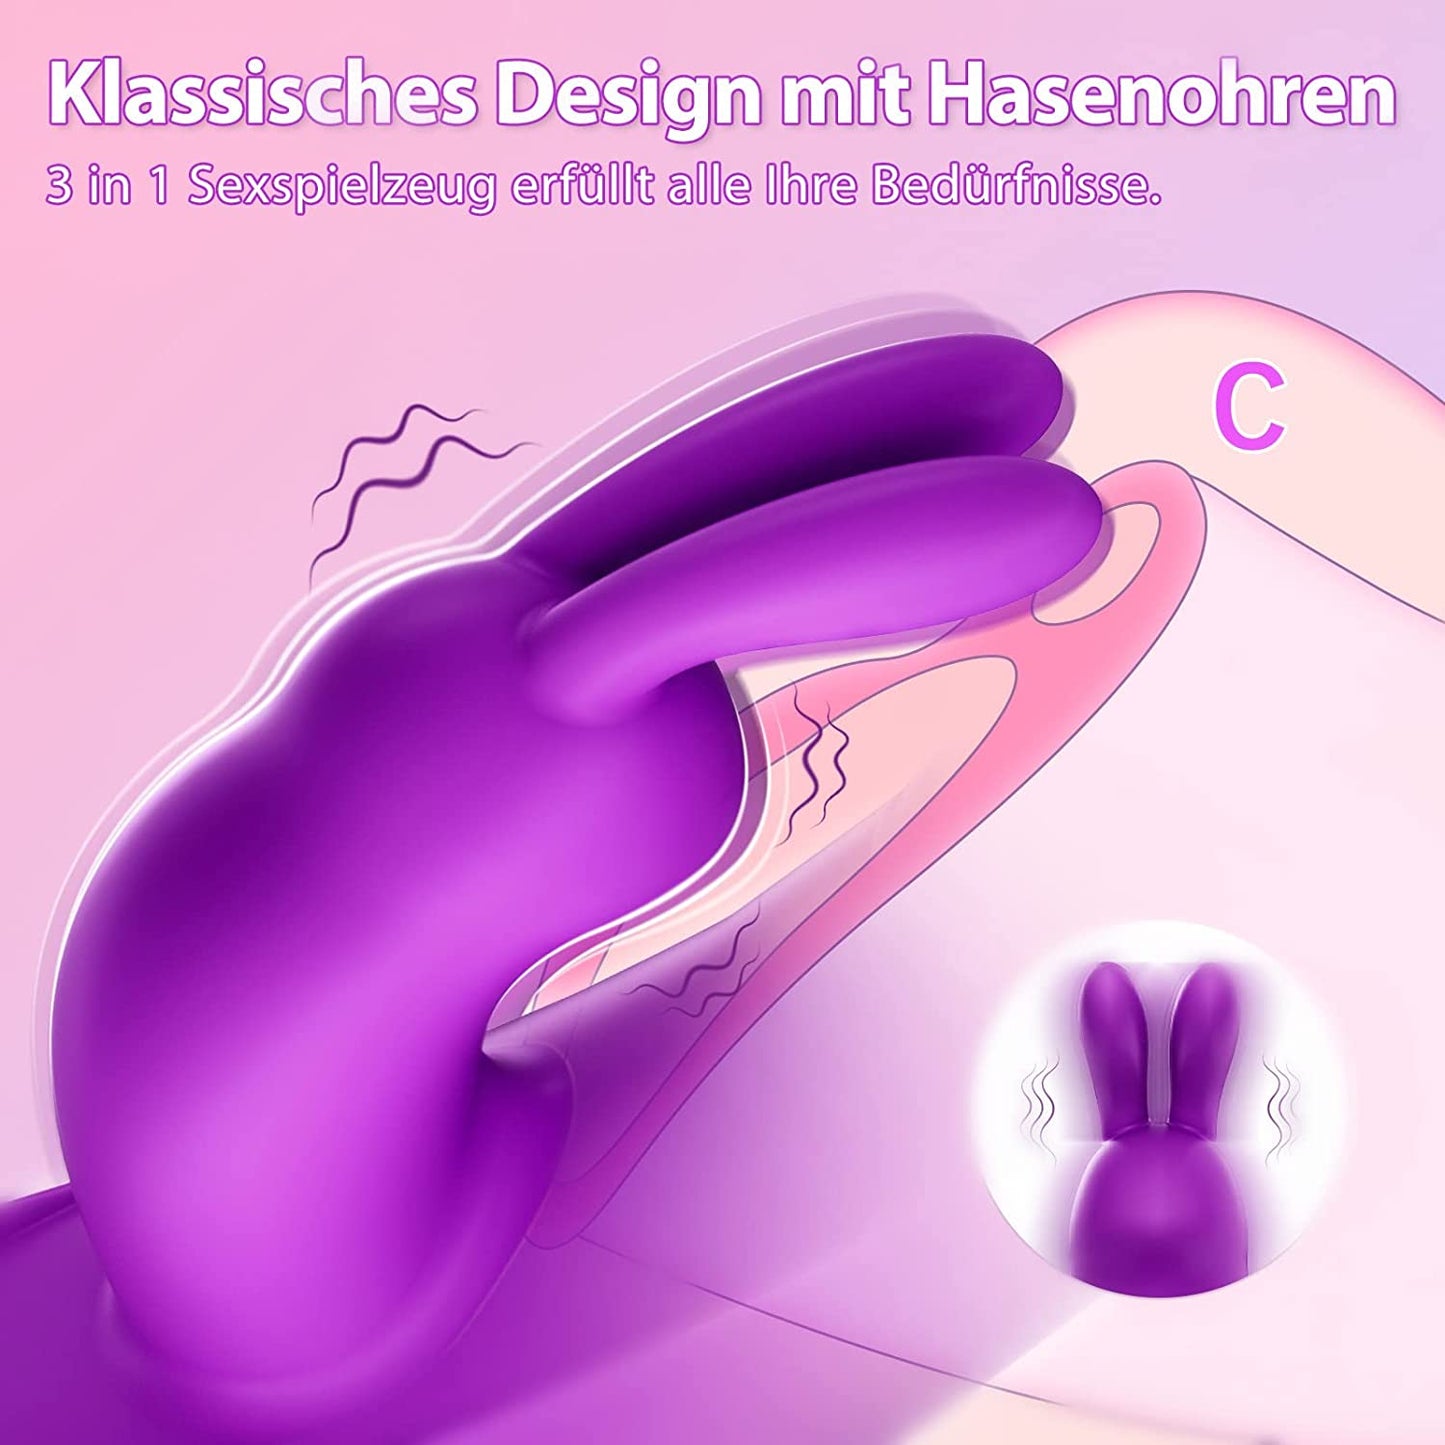 Vibratoren für Sie Klitoris und G-punkt Sex Spielzeug für die frau mit 3 Stoßfunktion & 11 Vibrationsmodi